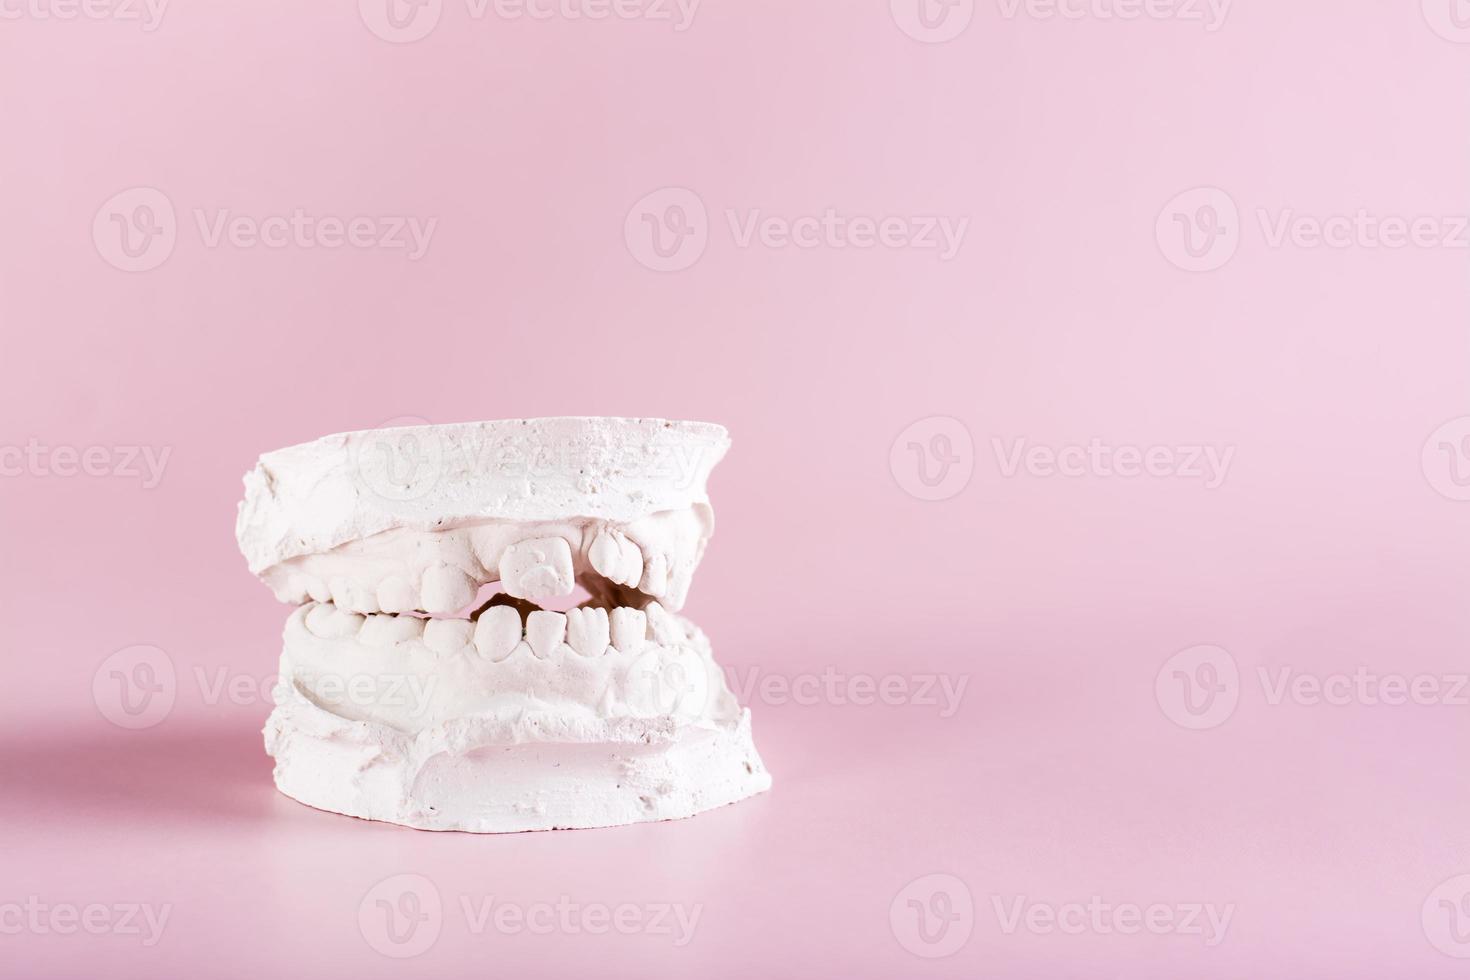 dental plåster kasta av krokig barns tänder på en rosa bakgrund foto